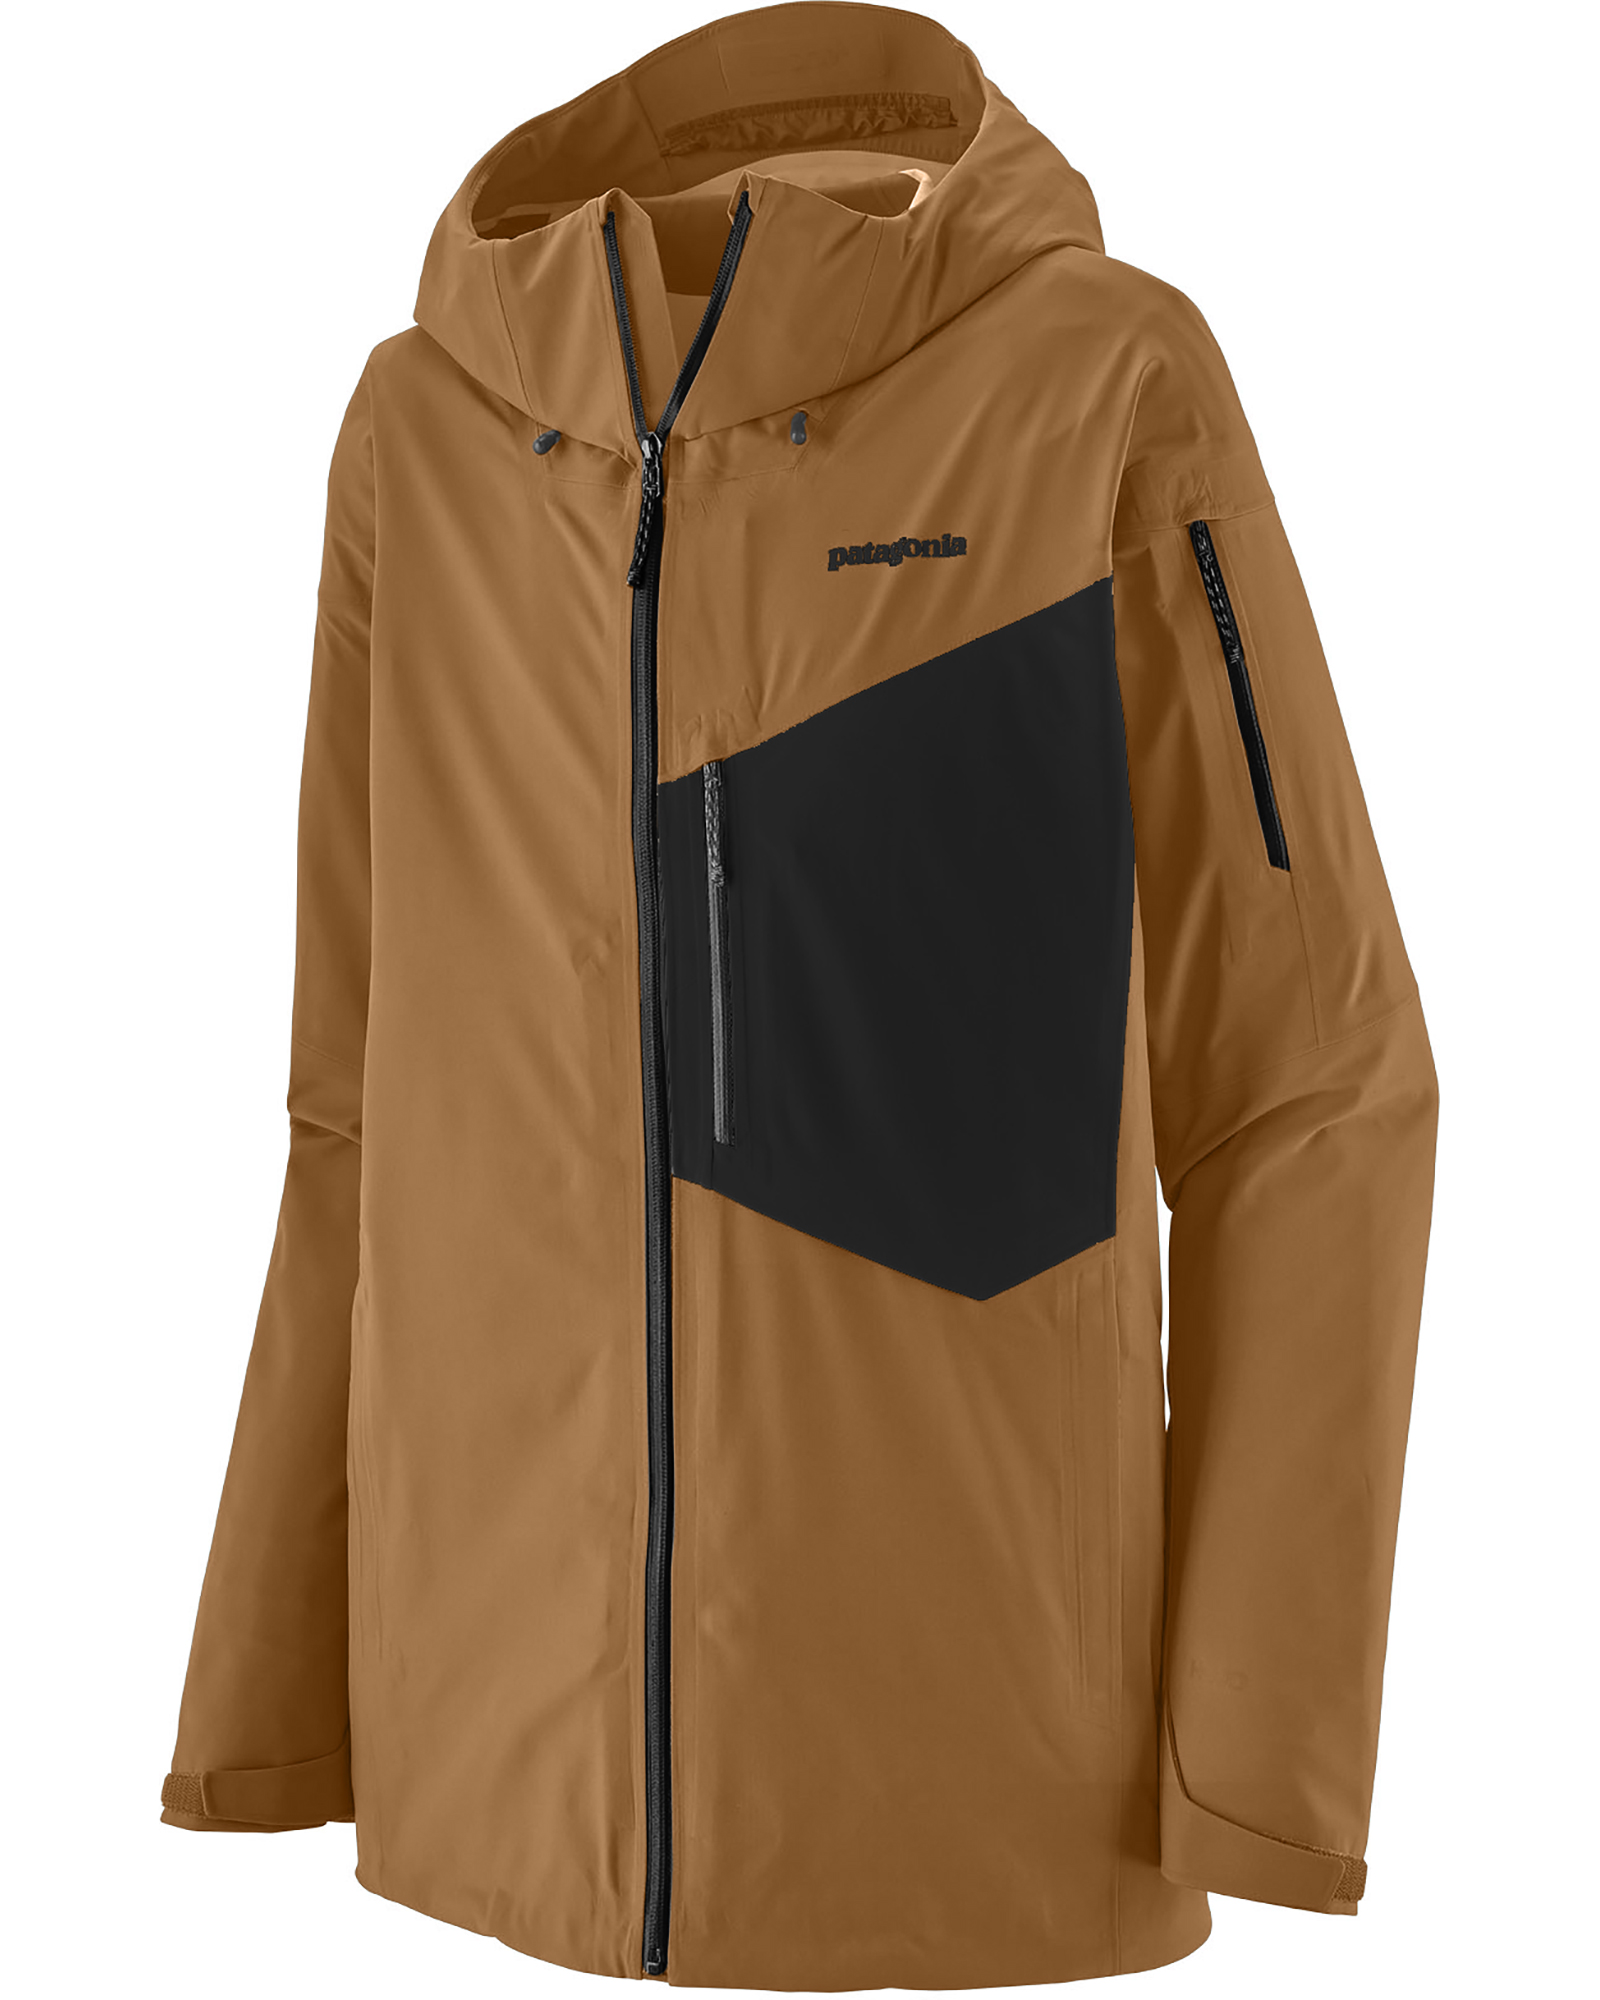 Patagonia Men's Snowdrifter Jacket 0